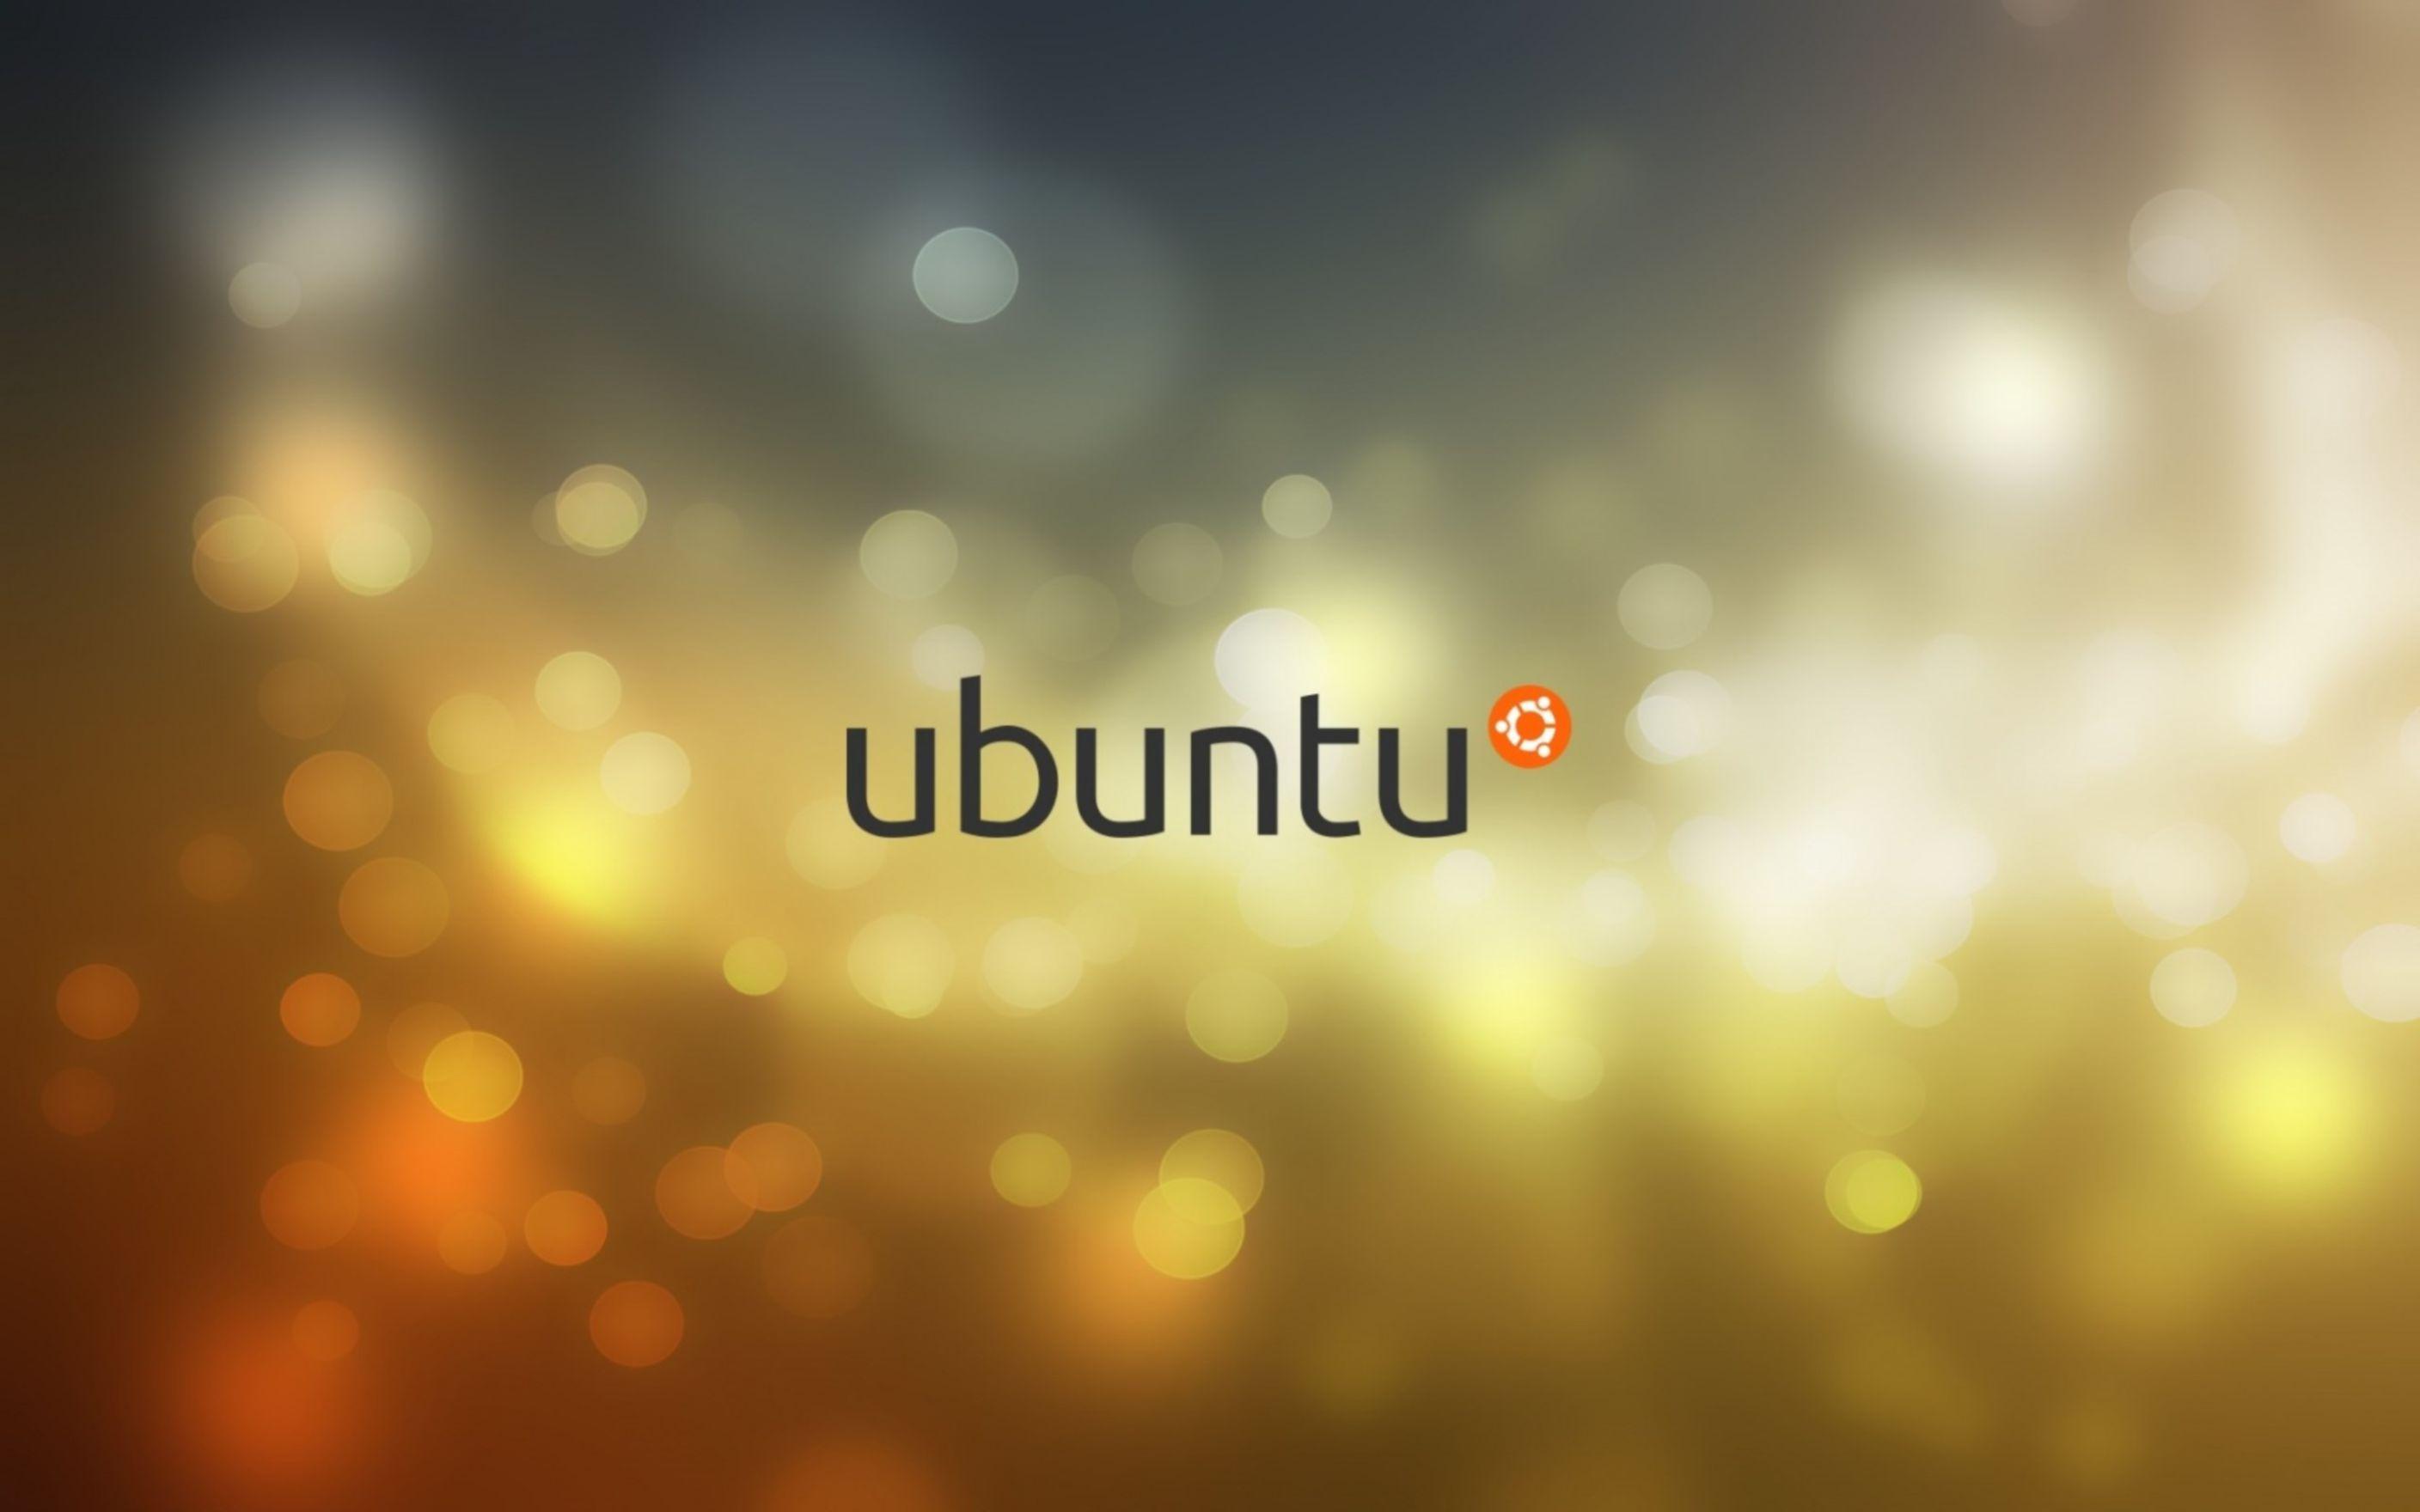 Ubuntu HD Wallpaper: Desktop HD Wallpaper Free Image